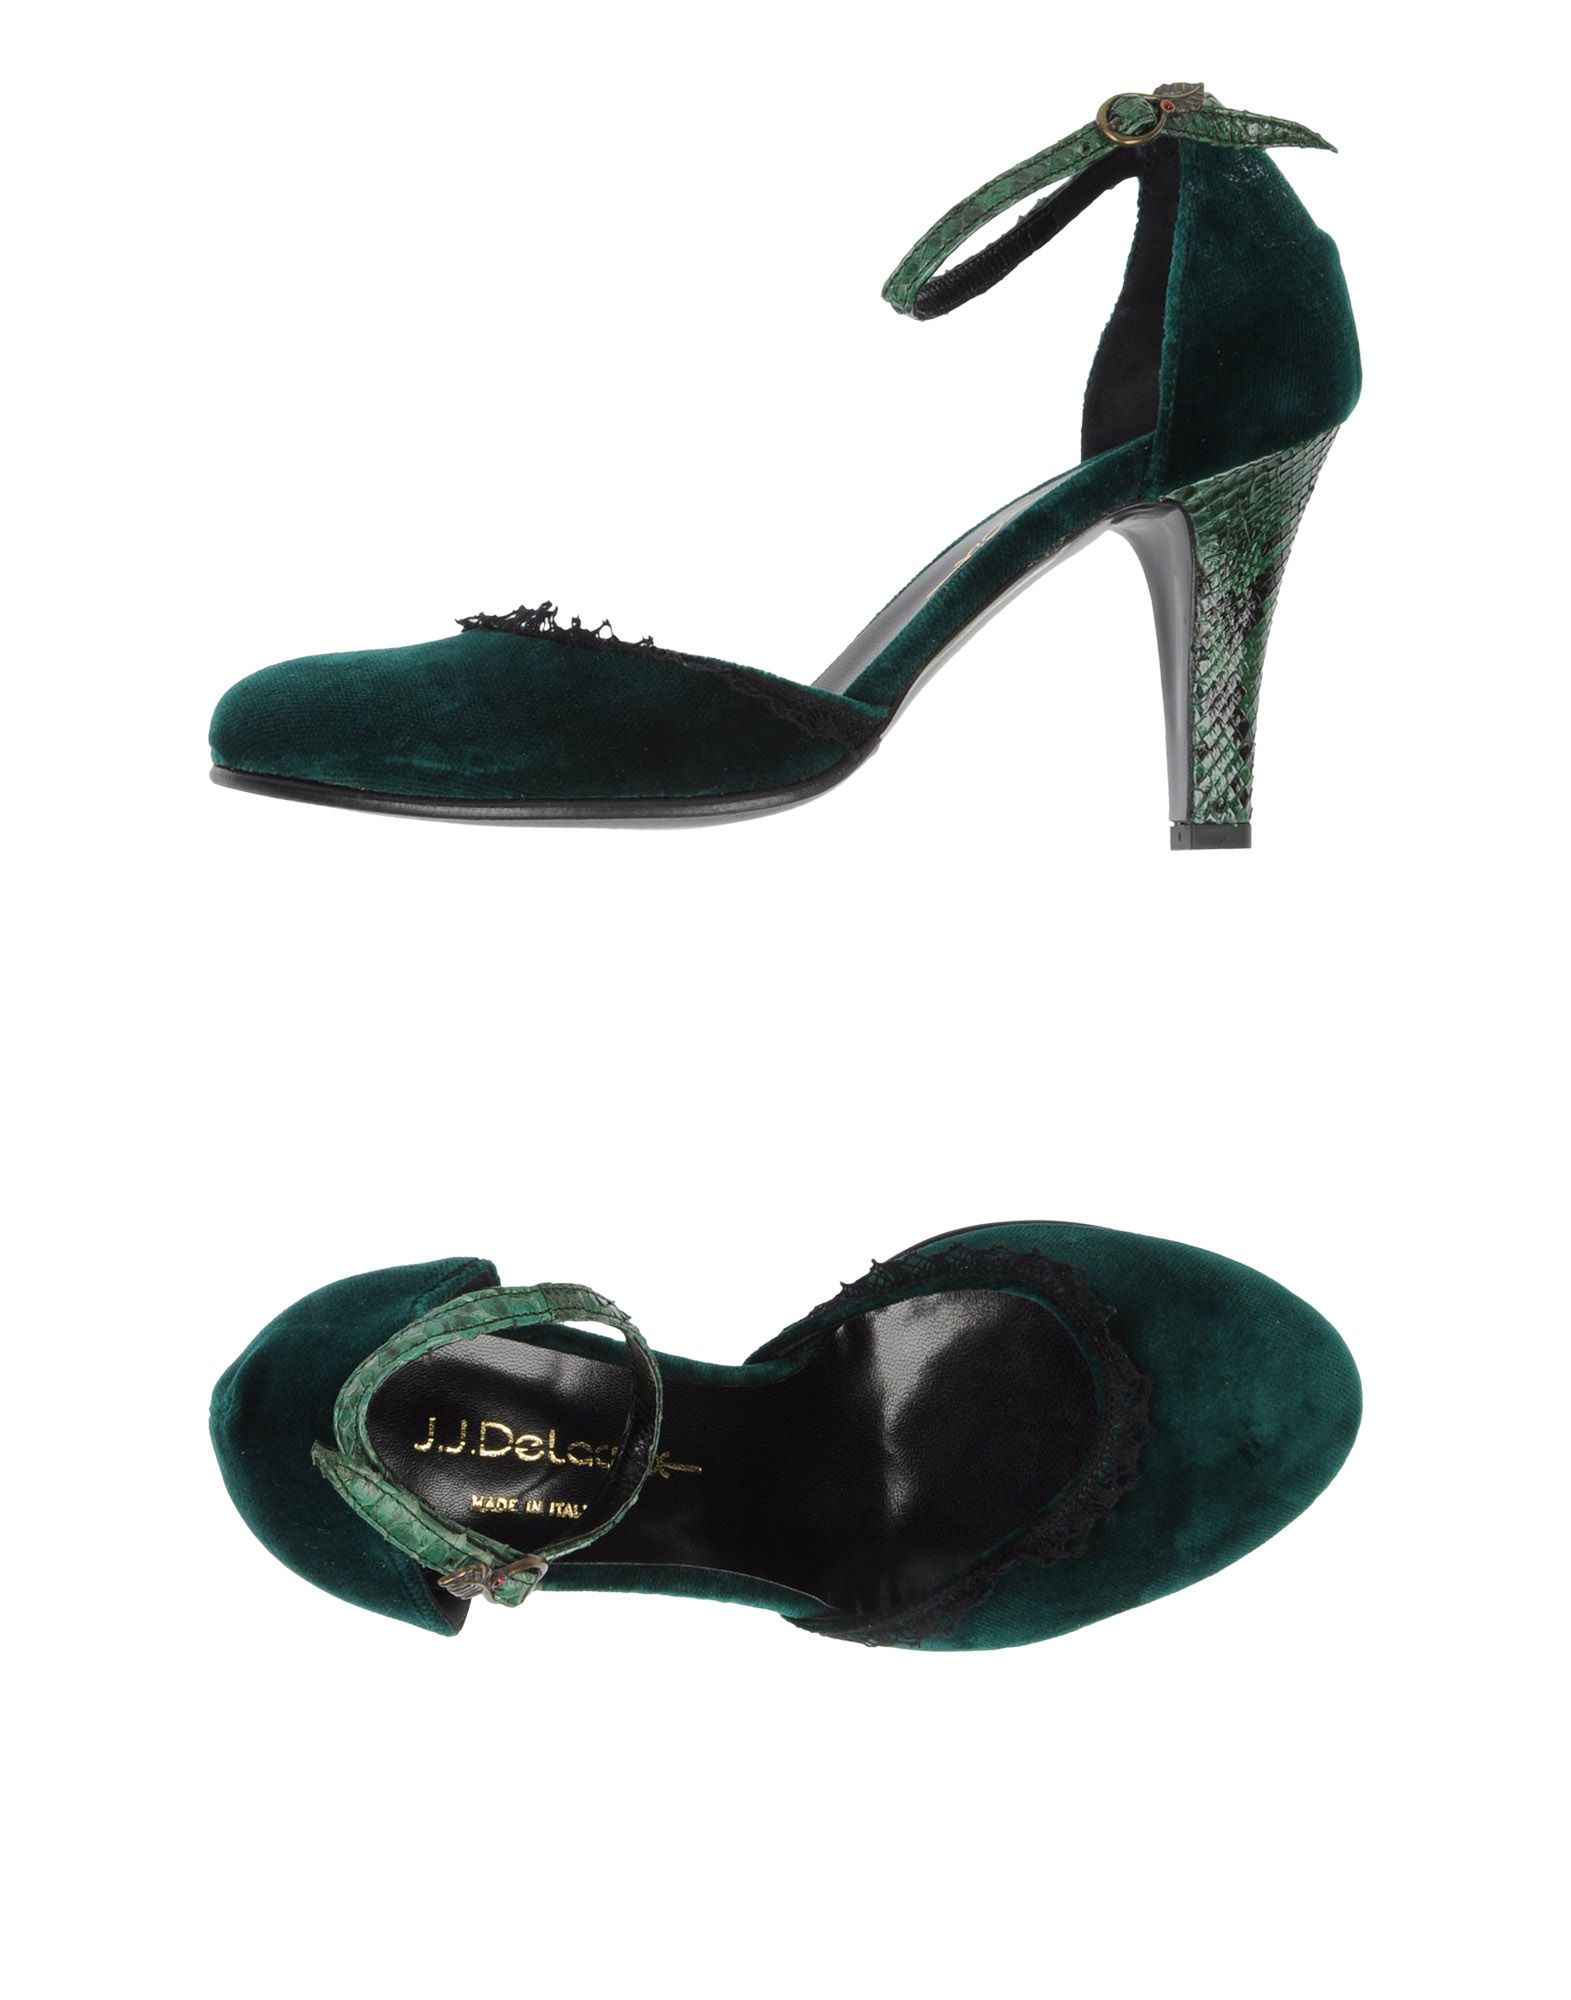 Foto J.J.Delacroix Zapatos De SalóN Mujer Verde foto 718536